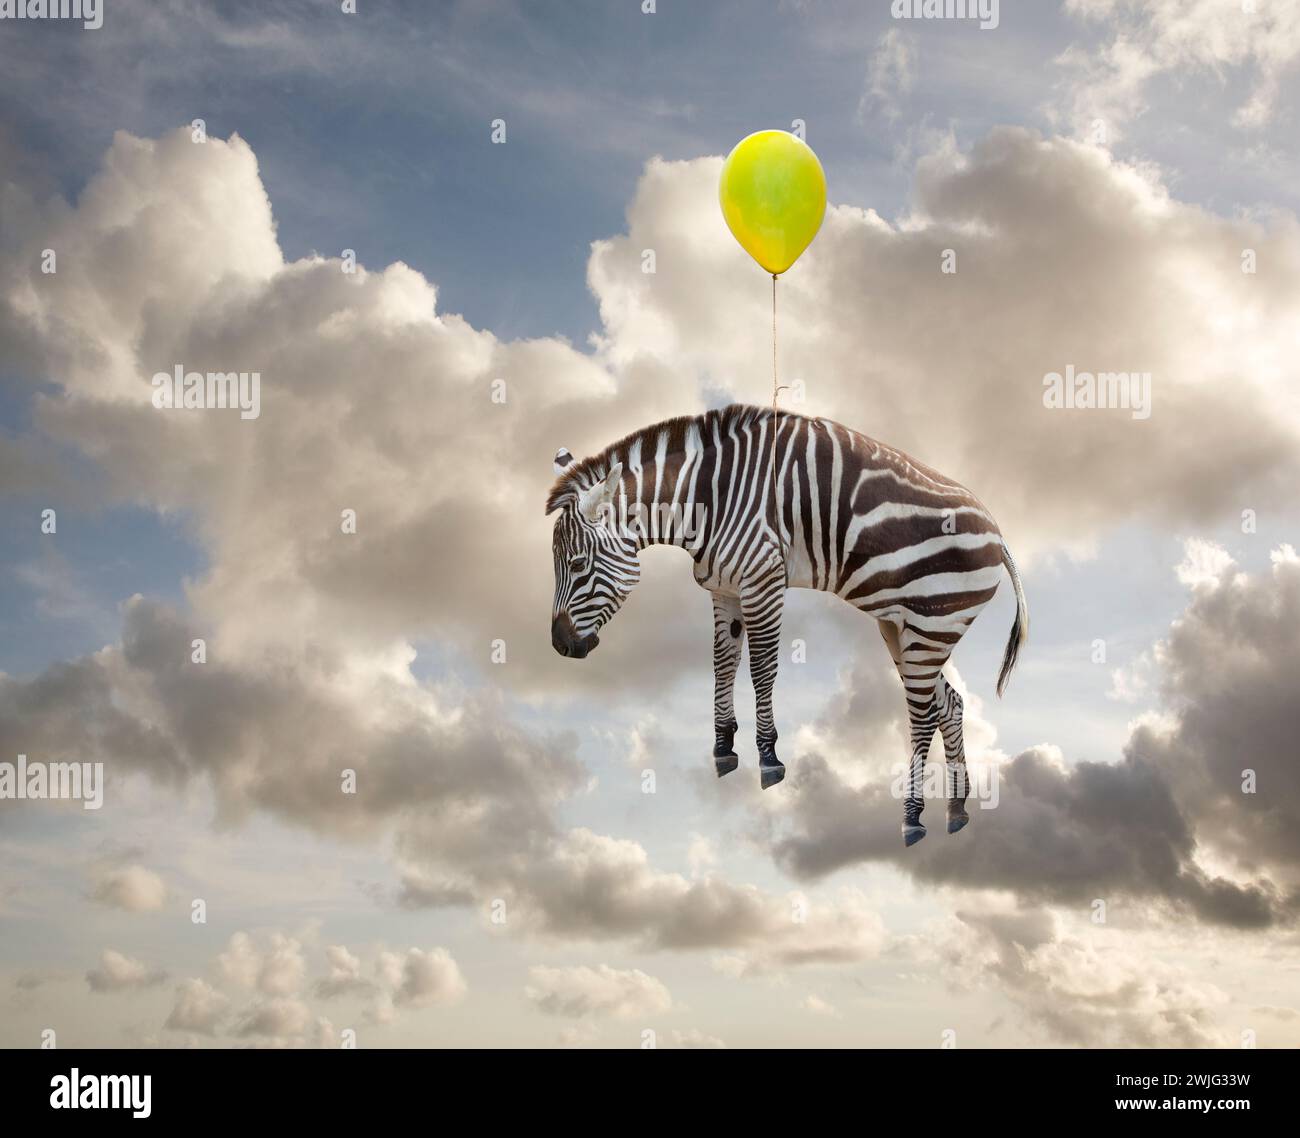 Una zebra galleggia attraverso un cielo estivo appeso a un palloncino giallo in un'immagine dell'inaspettato, fantasia, immaginazione e bizzarro. Foto Stock